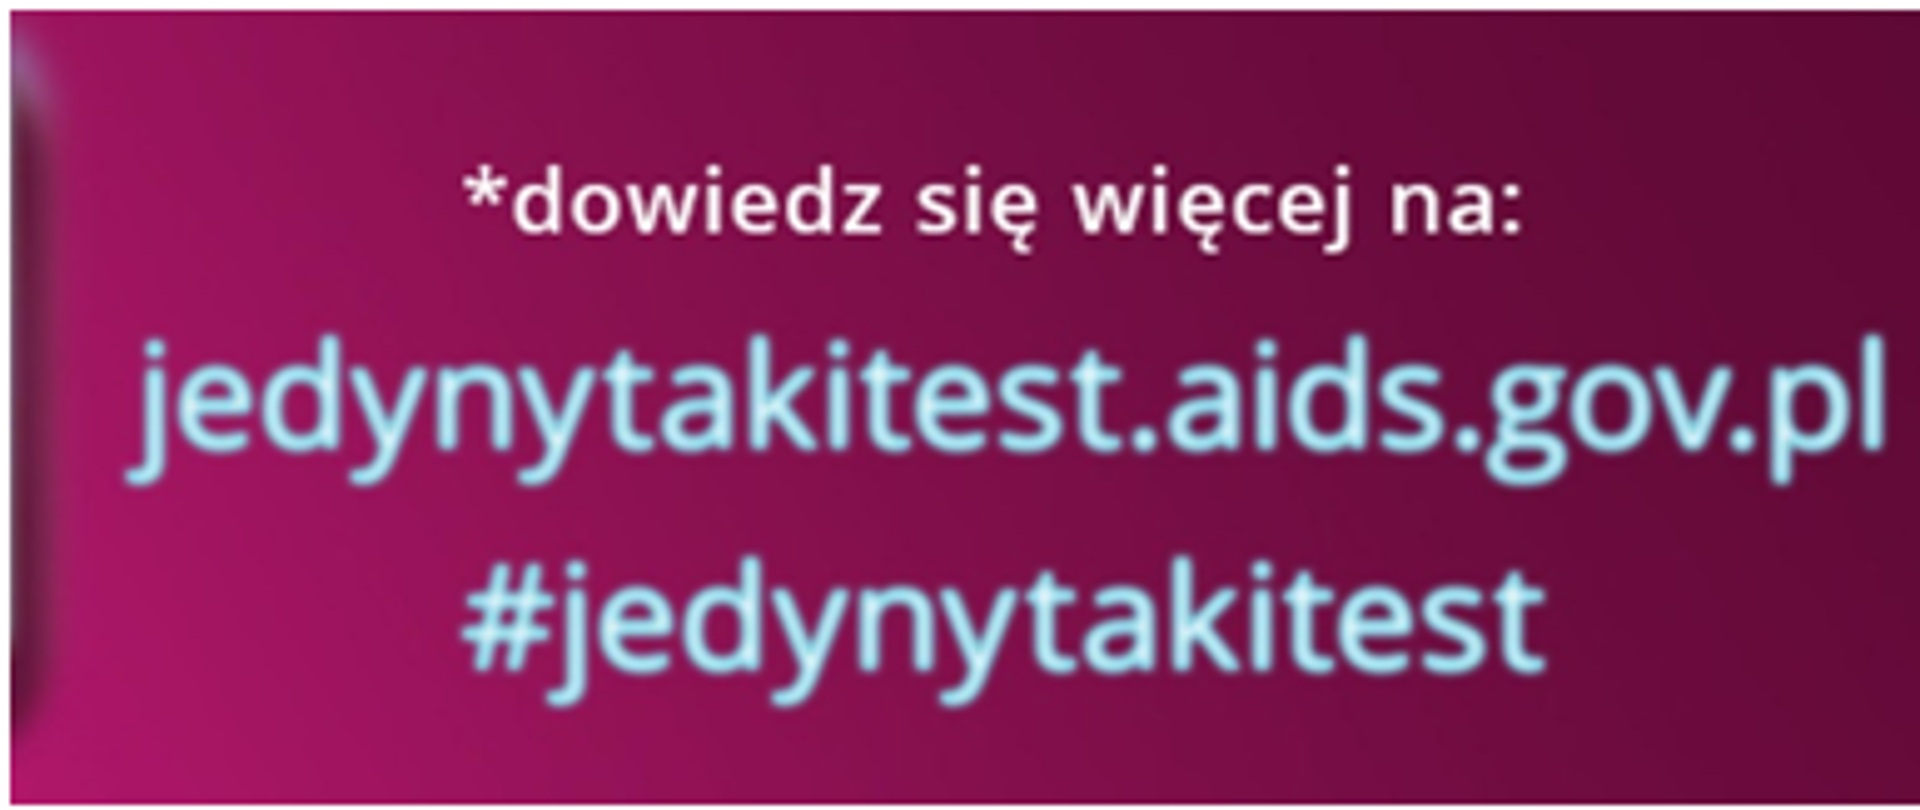 Napis: pierwsza linia:dowiedz się więcej druga linia jedynytakitest.aids.gov.pl trzecia linia: #jedynytakitest